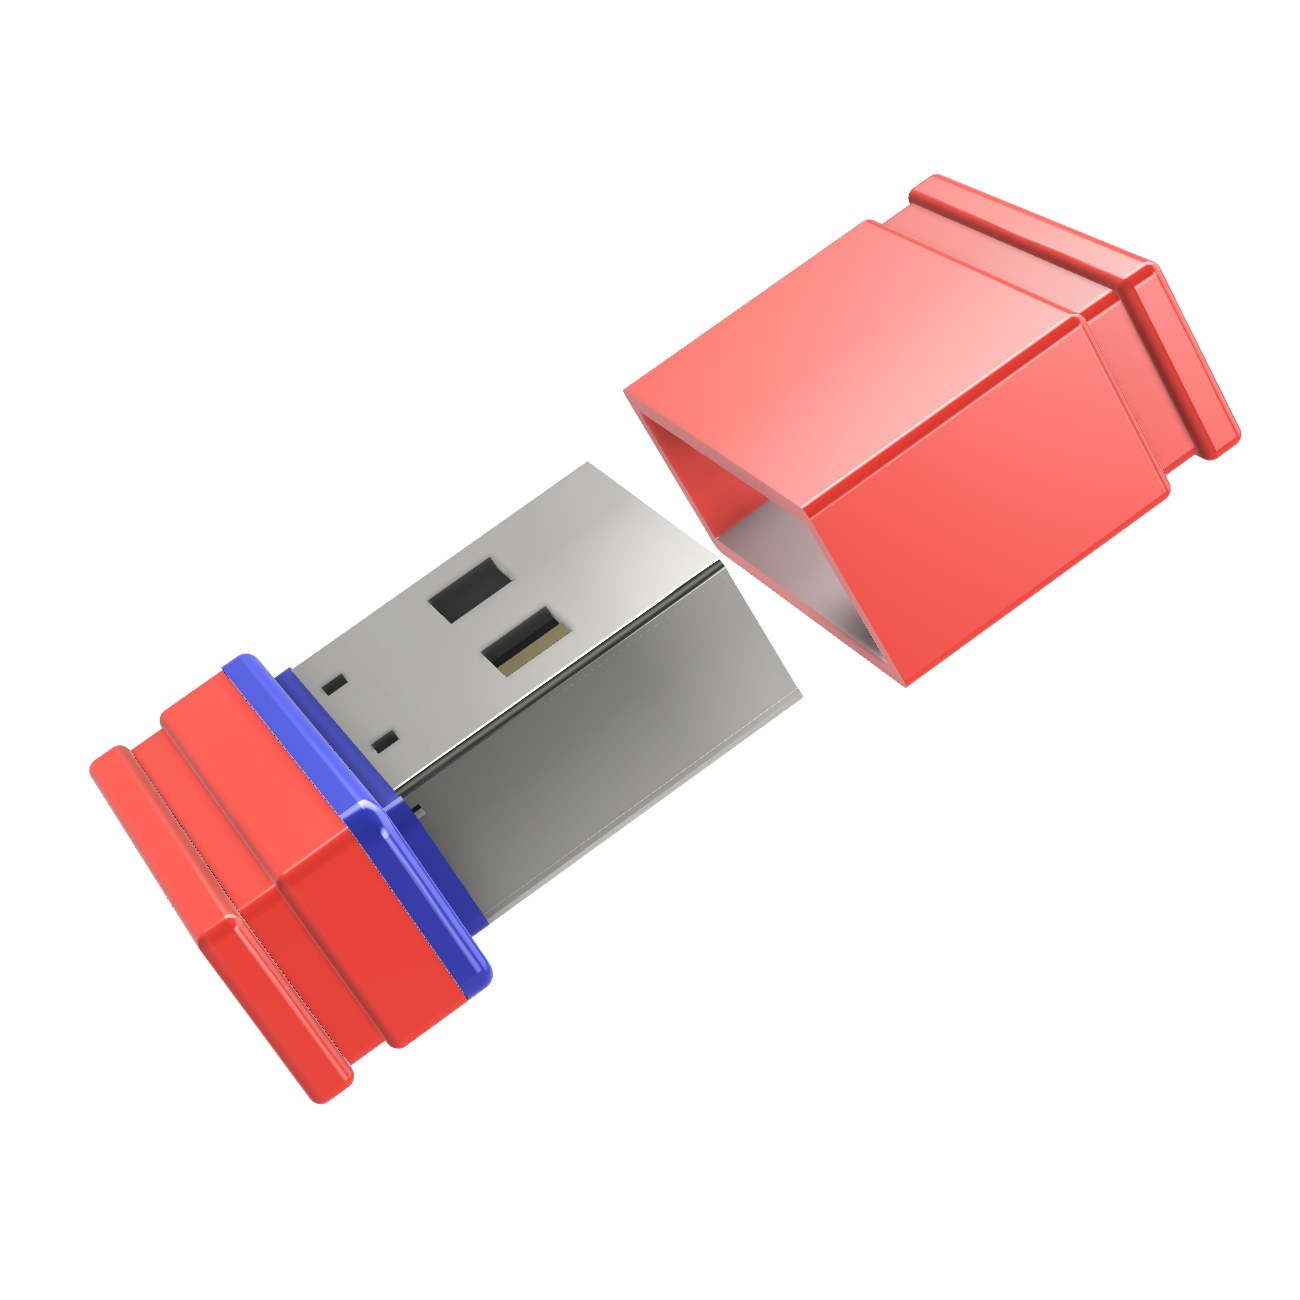 P1 Mini GB) 8 USB-Stick ®ULTRA GERMANY (Rot/Blau, USB